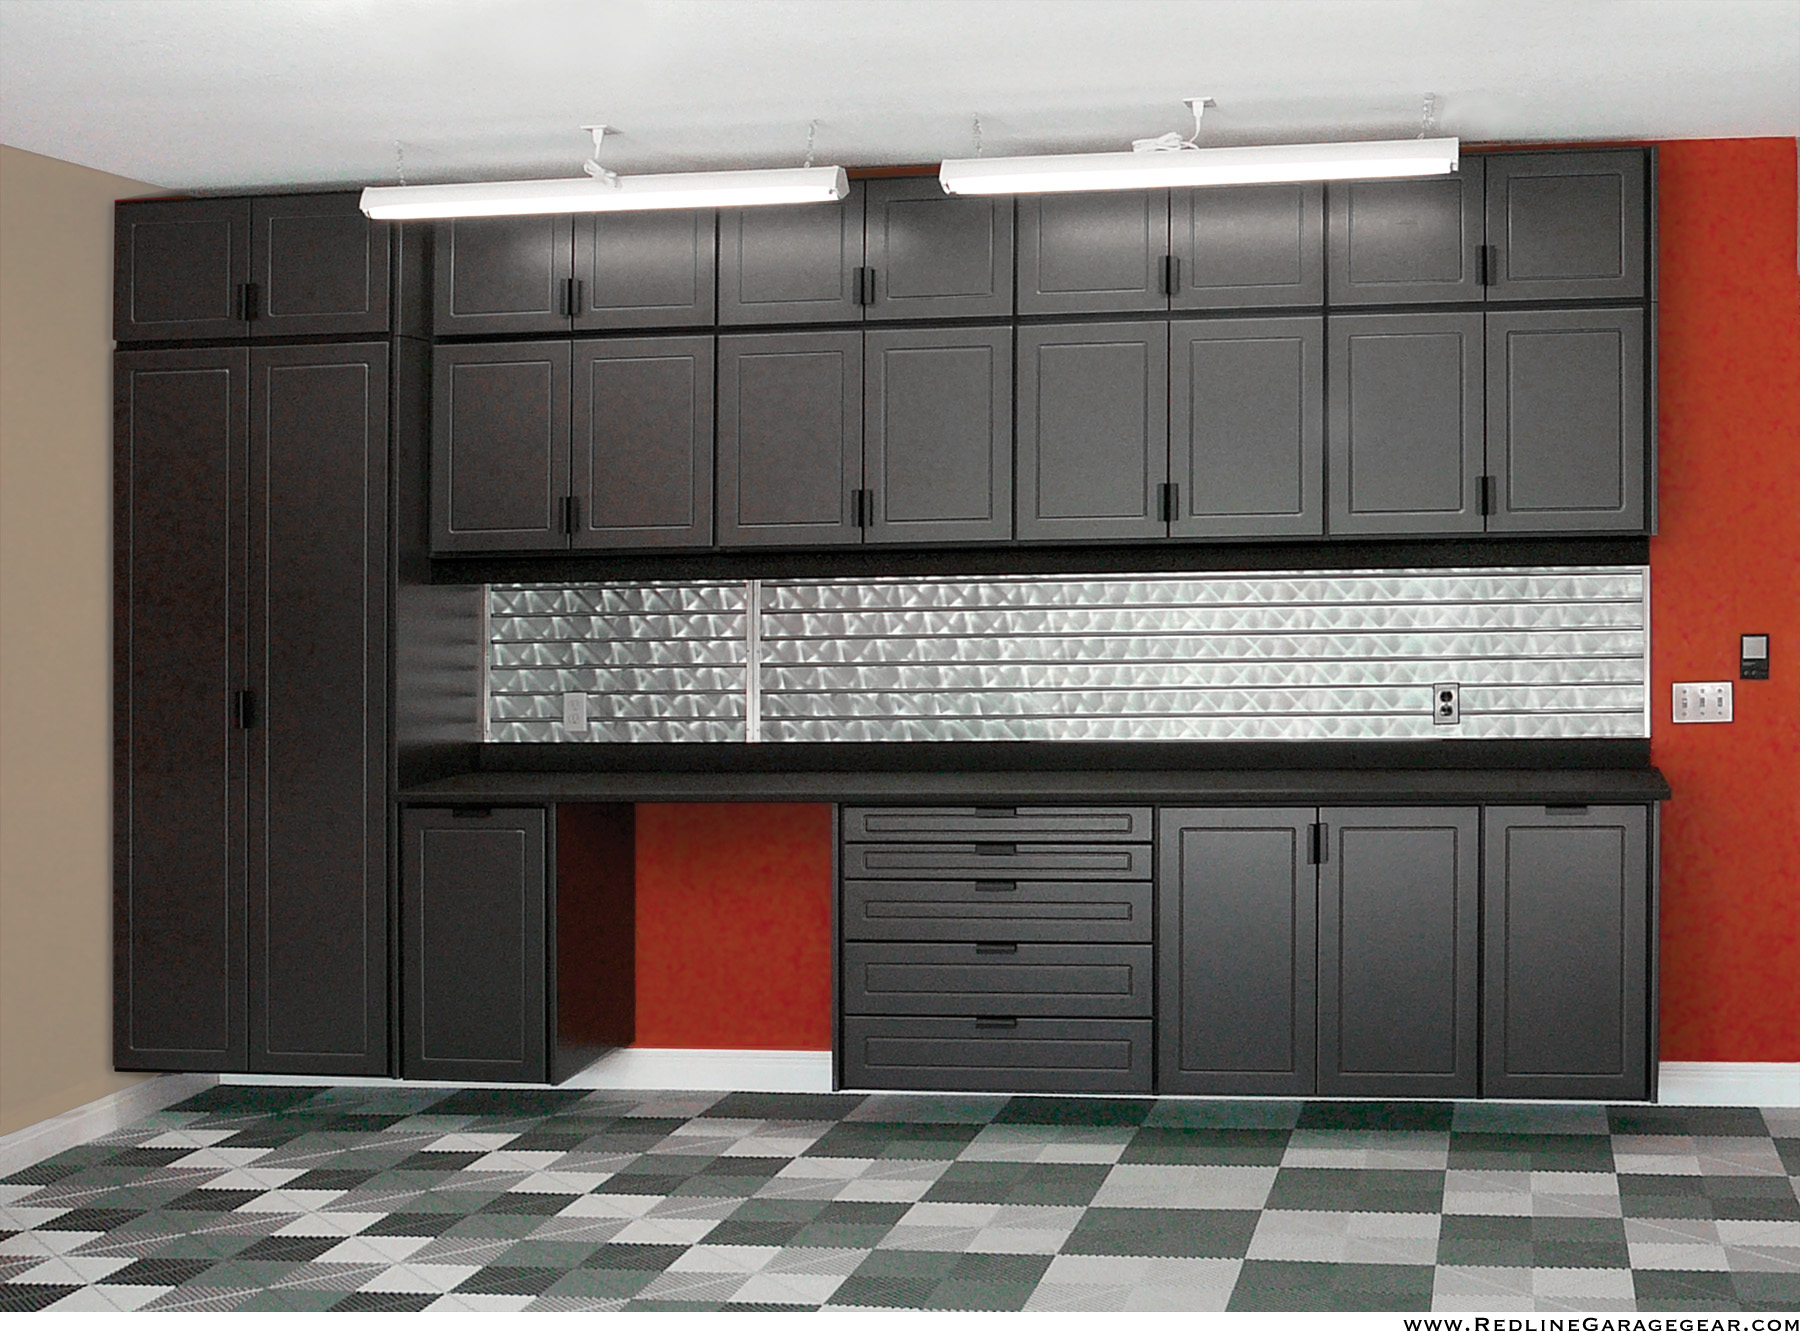 Redline Garagegear garage cabinets